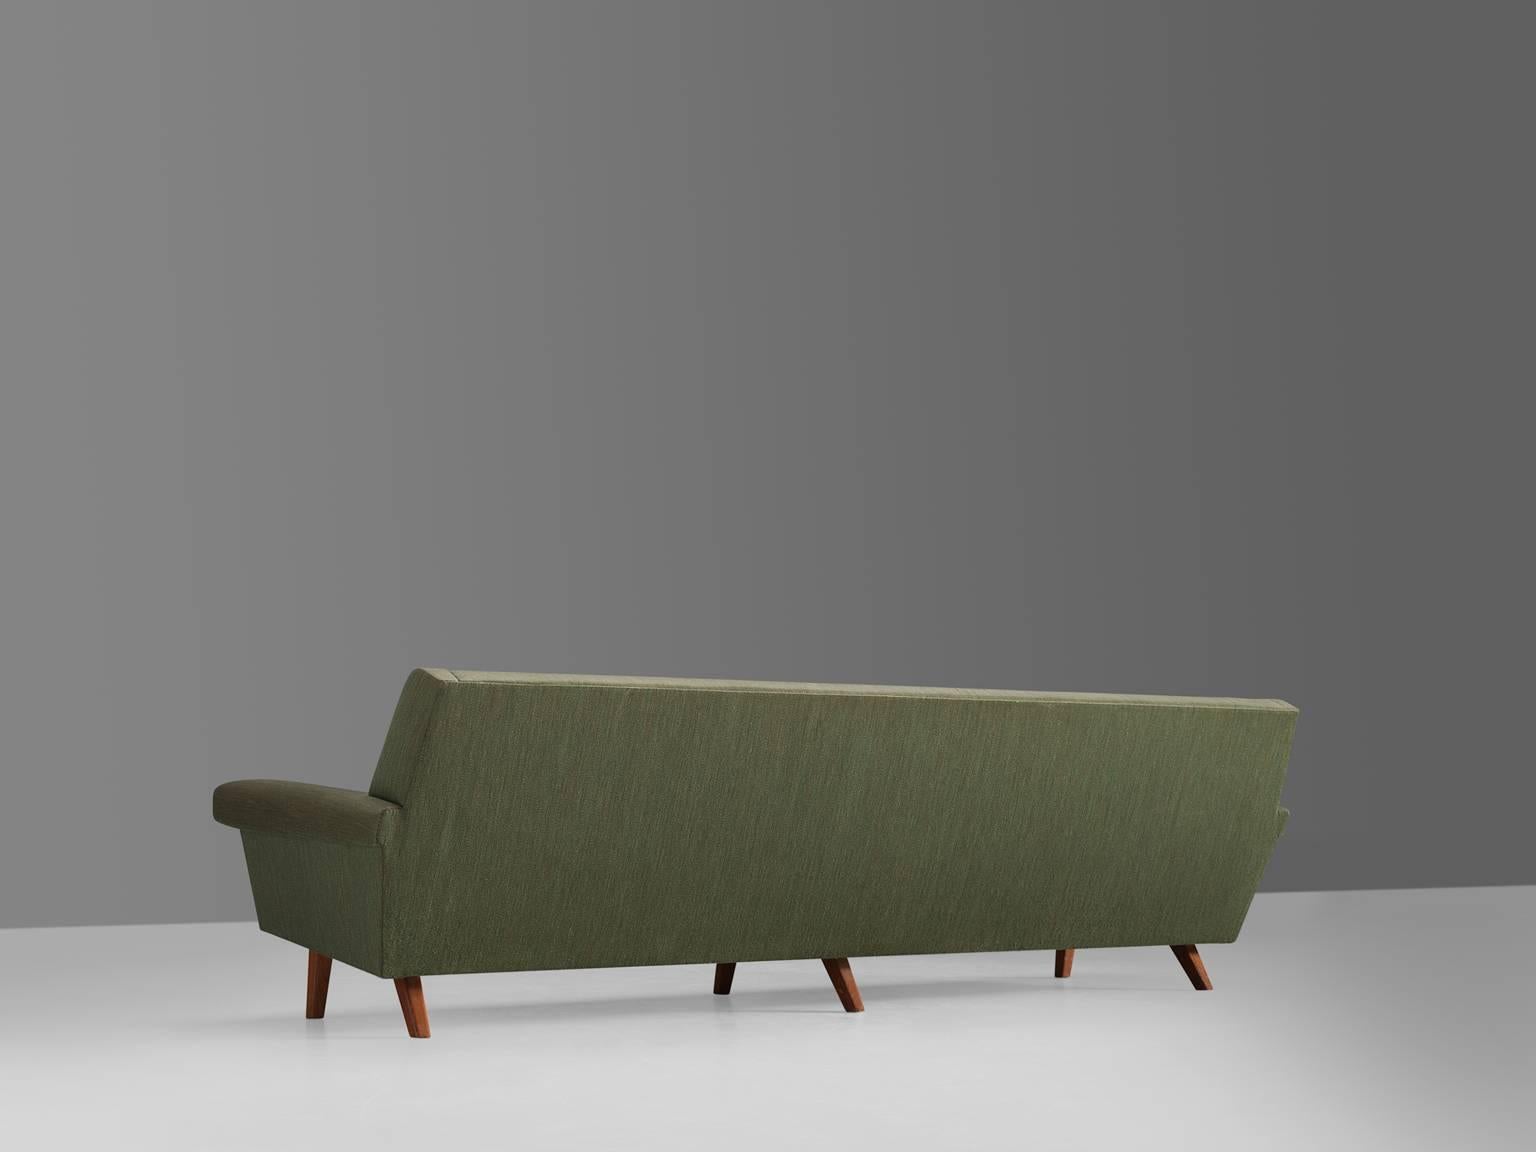 Mid-20th Century Danish Four-Seat Sofa in Original Green Fabric, 1950s